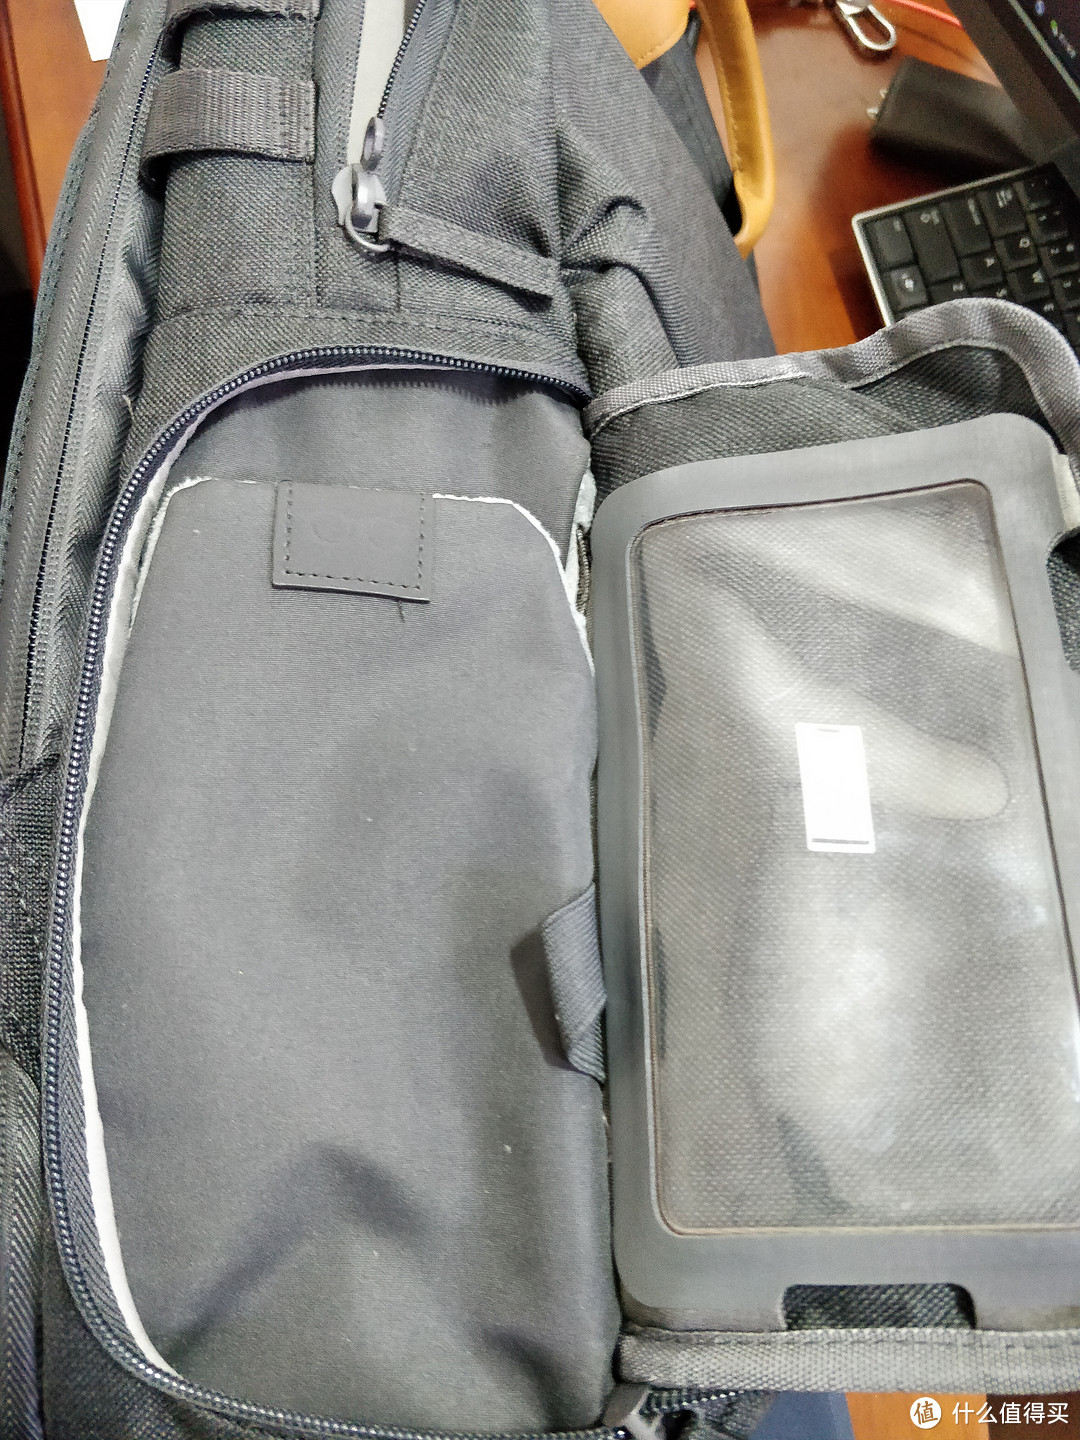 上班狗通勤背包新选择HP惠普ENVY多功能笔记本电脑双肩包